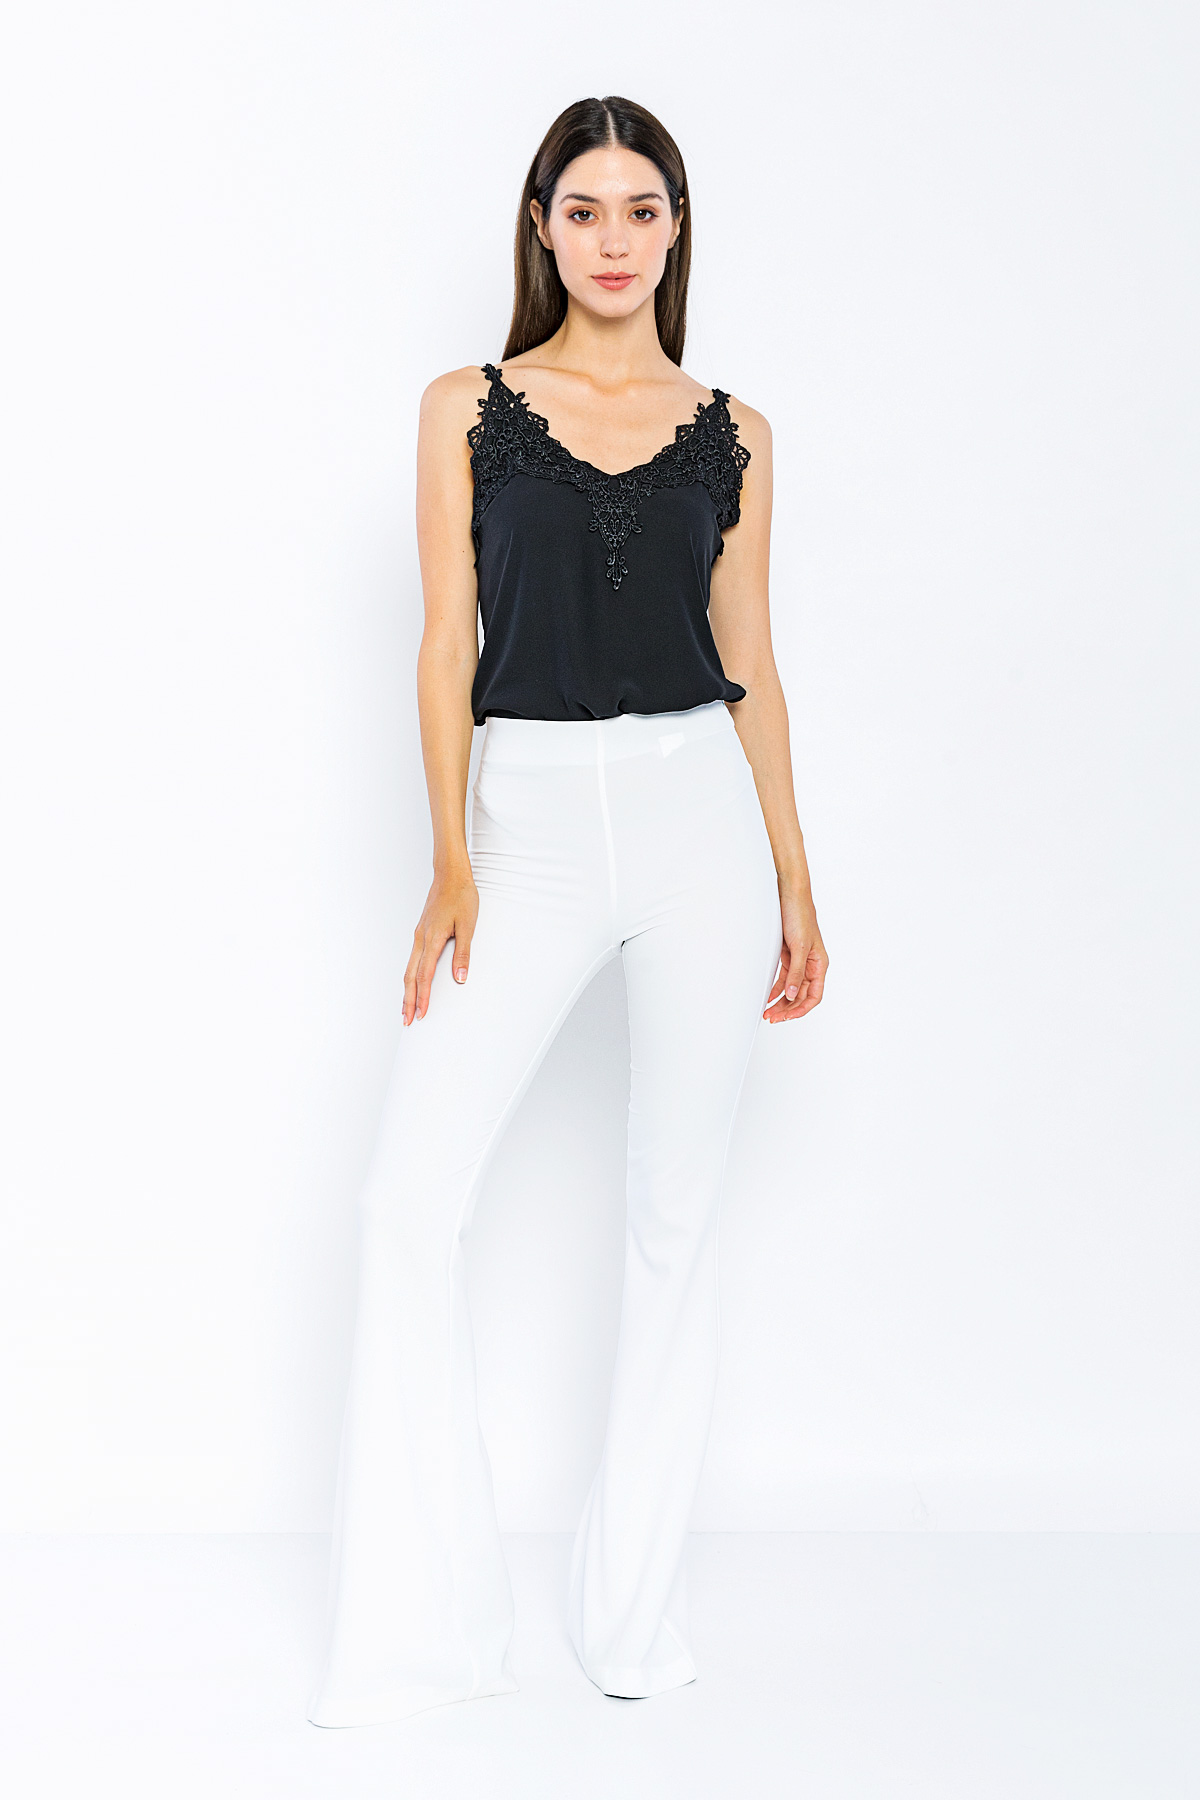 Kadın Beyaz Yüksek Bel Klasik İspanyol Paça Pantolon resmi